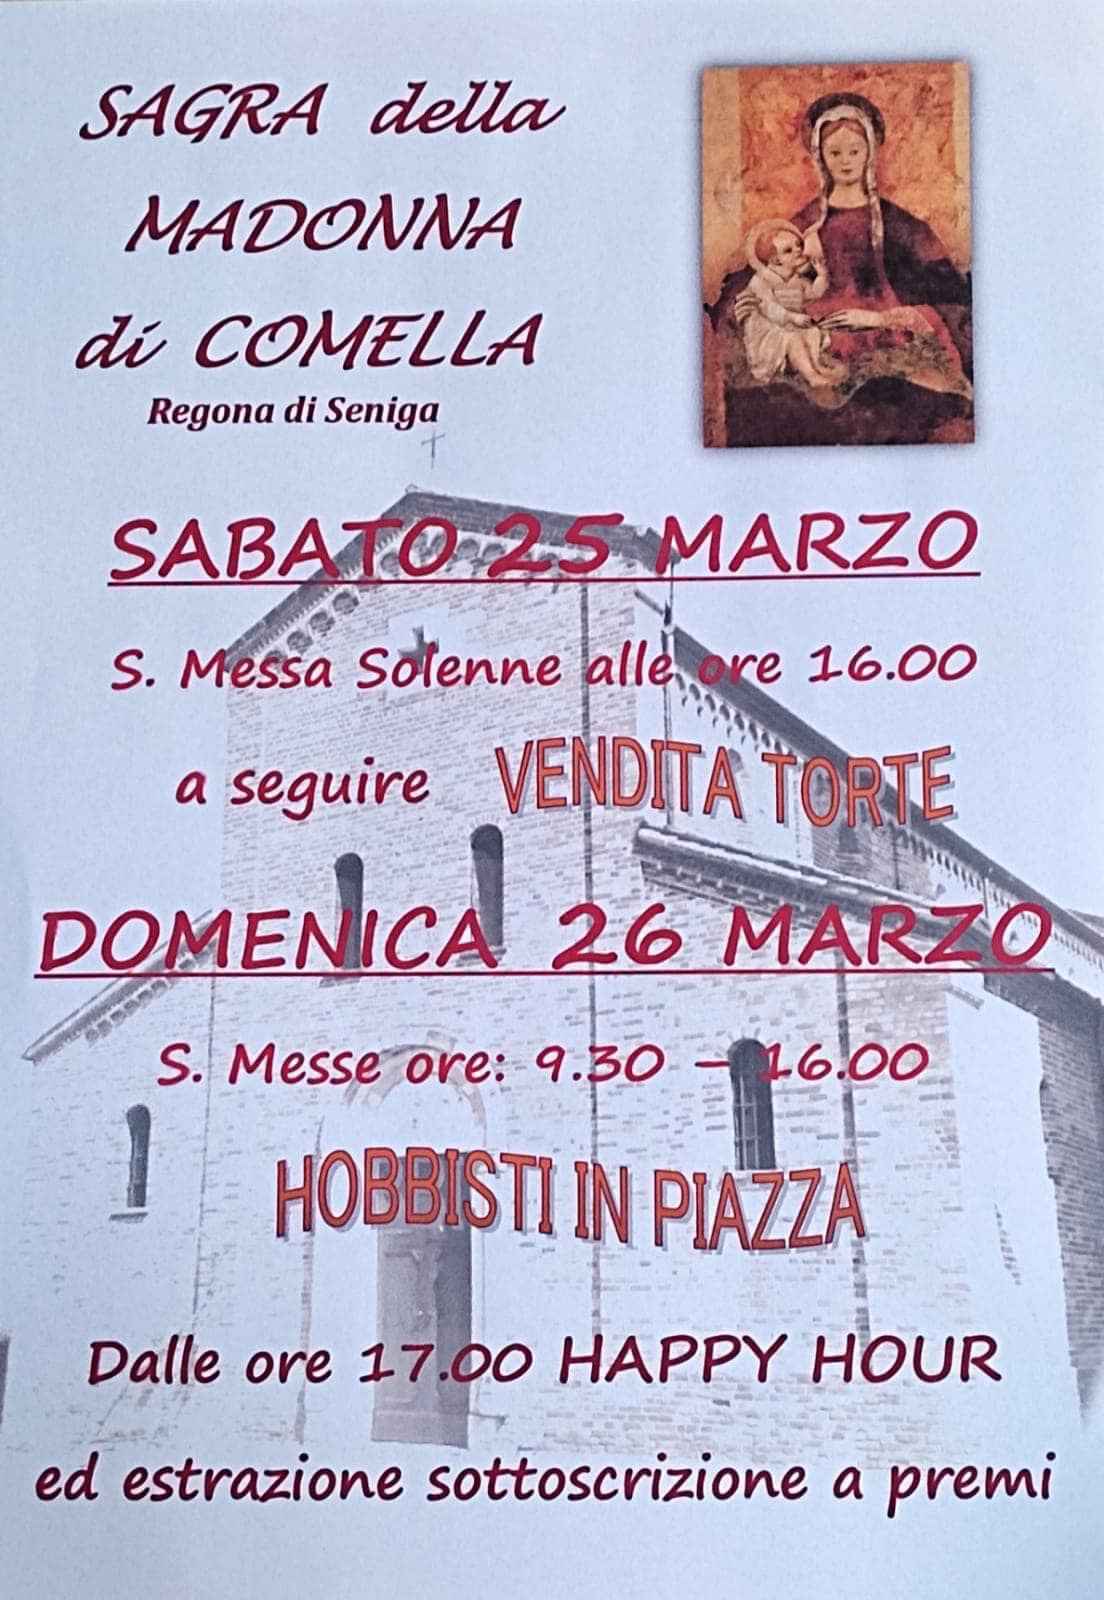 Seniga (BS)
"Sagra della Madonna di Comella"
25-26 Marzo 2023